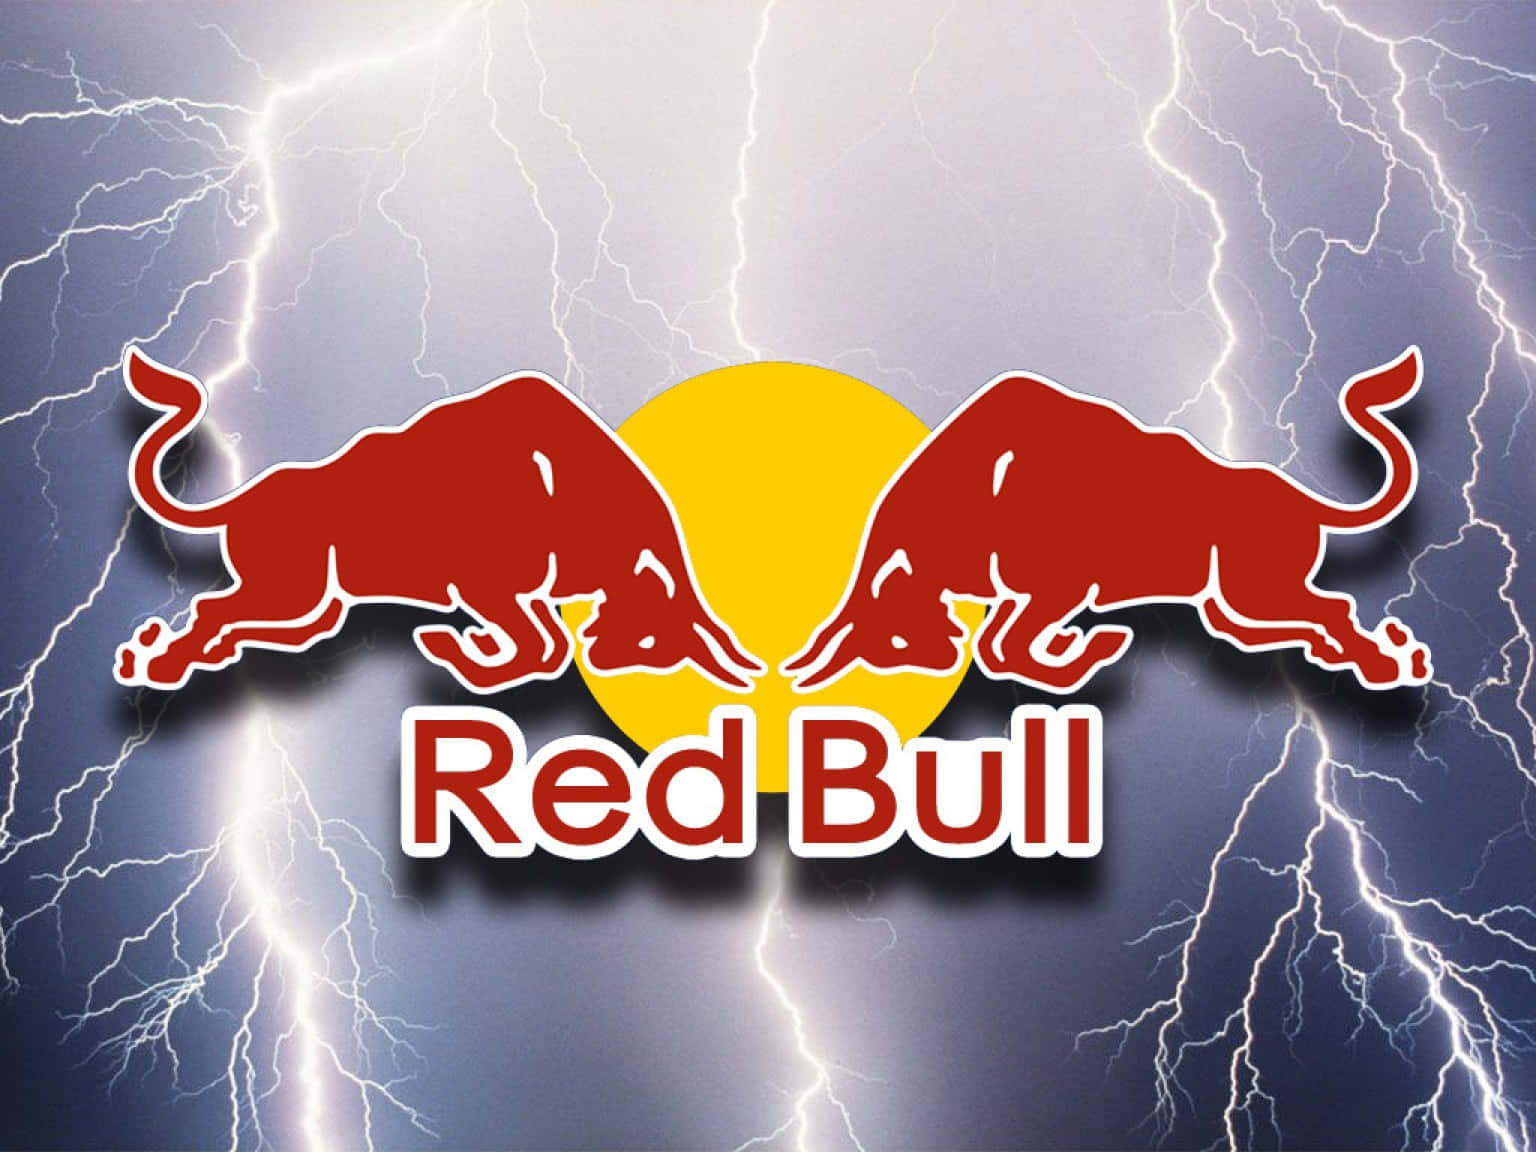 Einintensiver Energieschub - Red Bull!